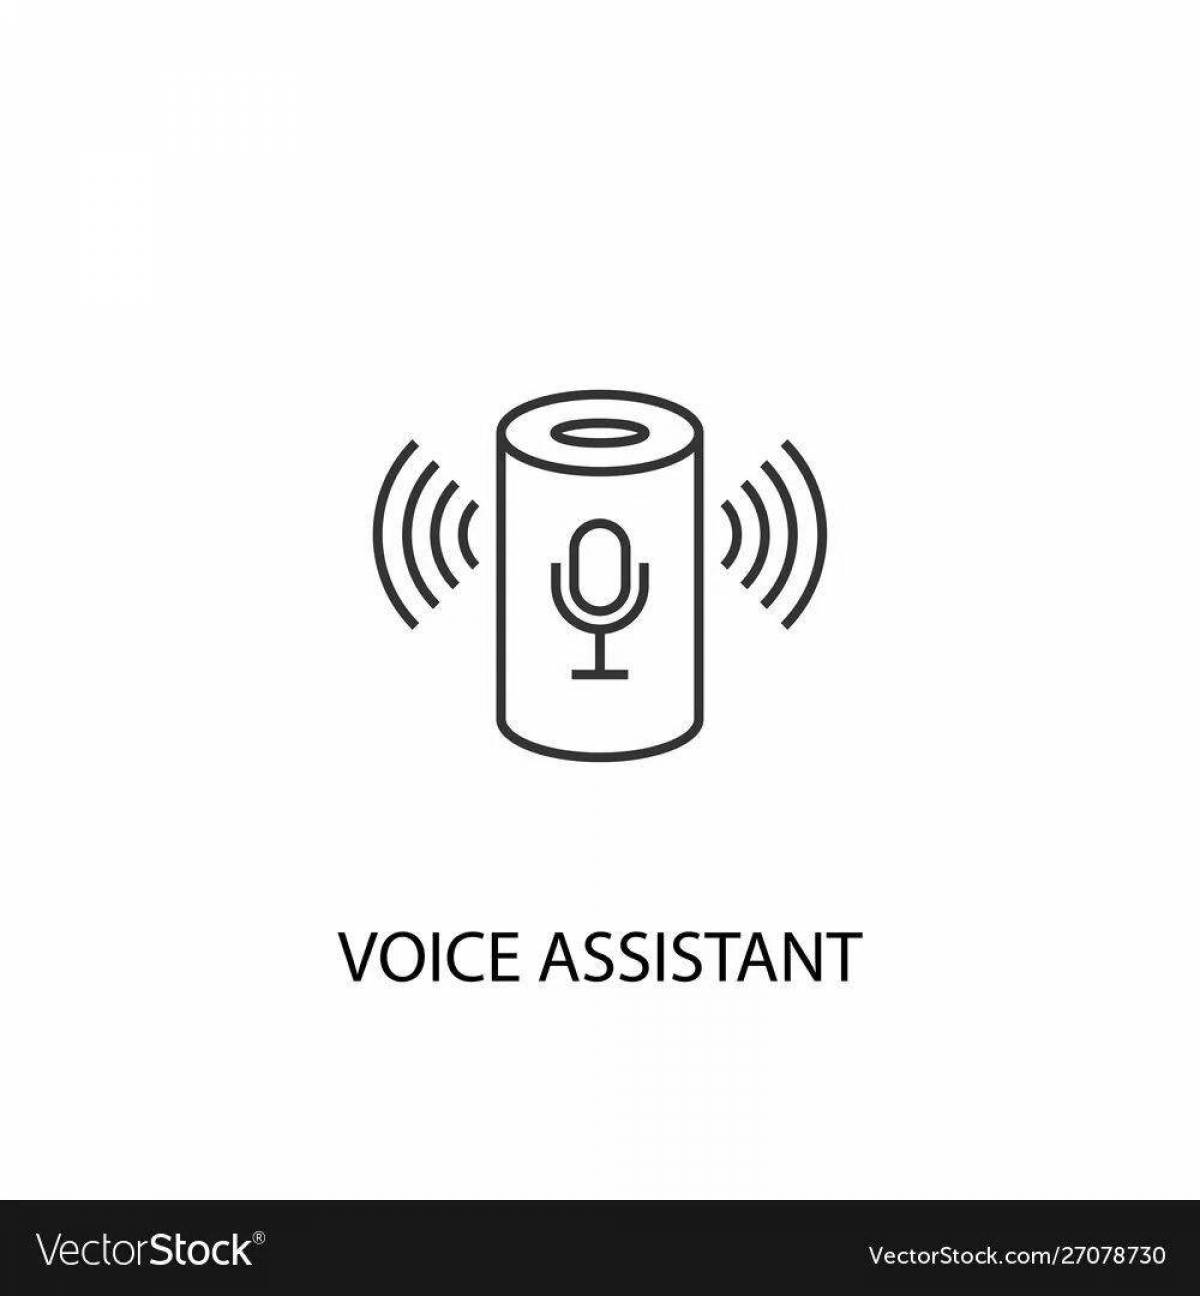 Voice assistant #8